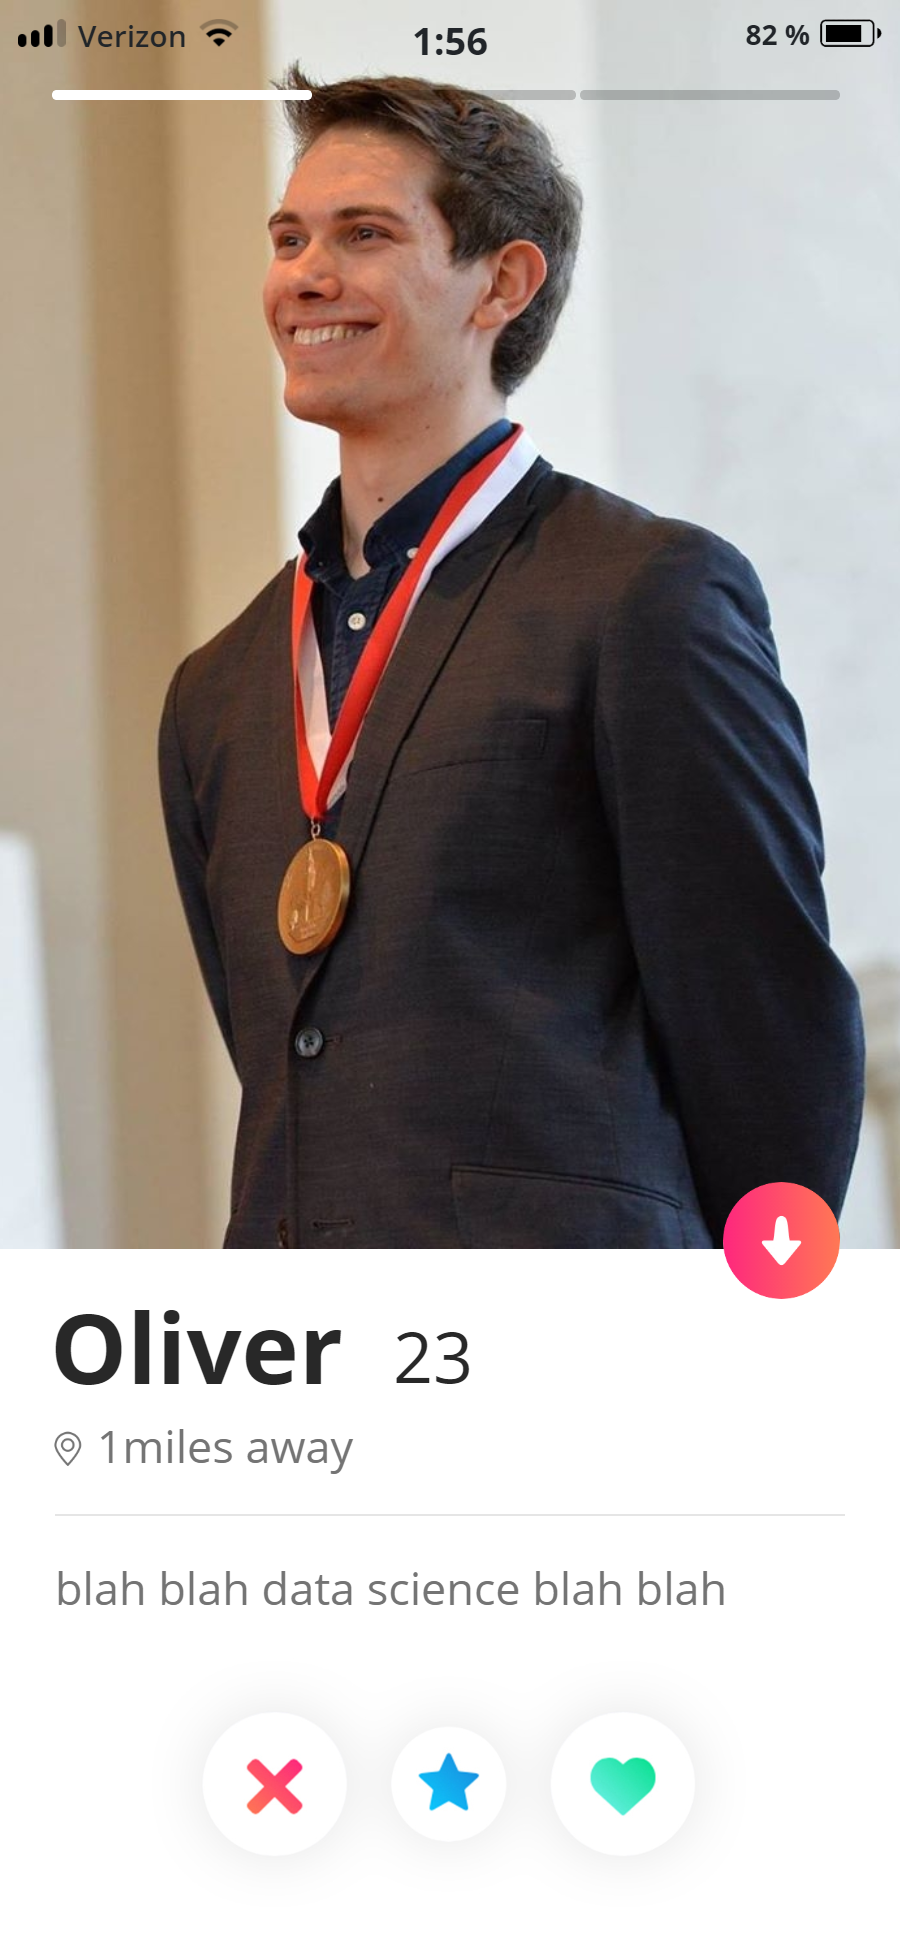 Oliver's Tinder